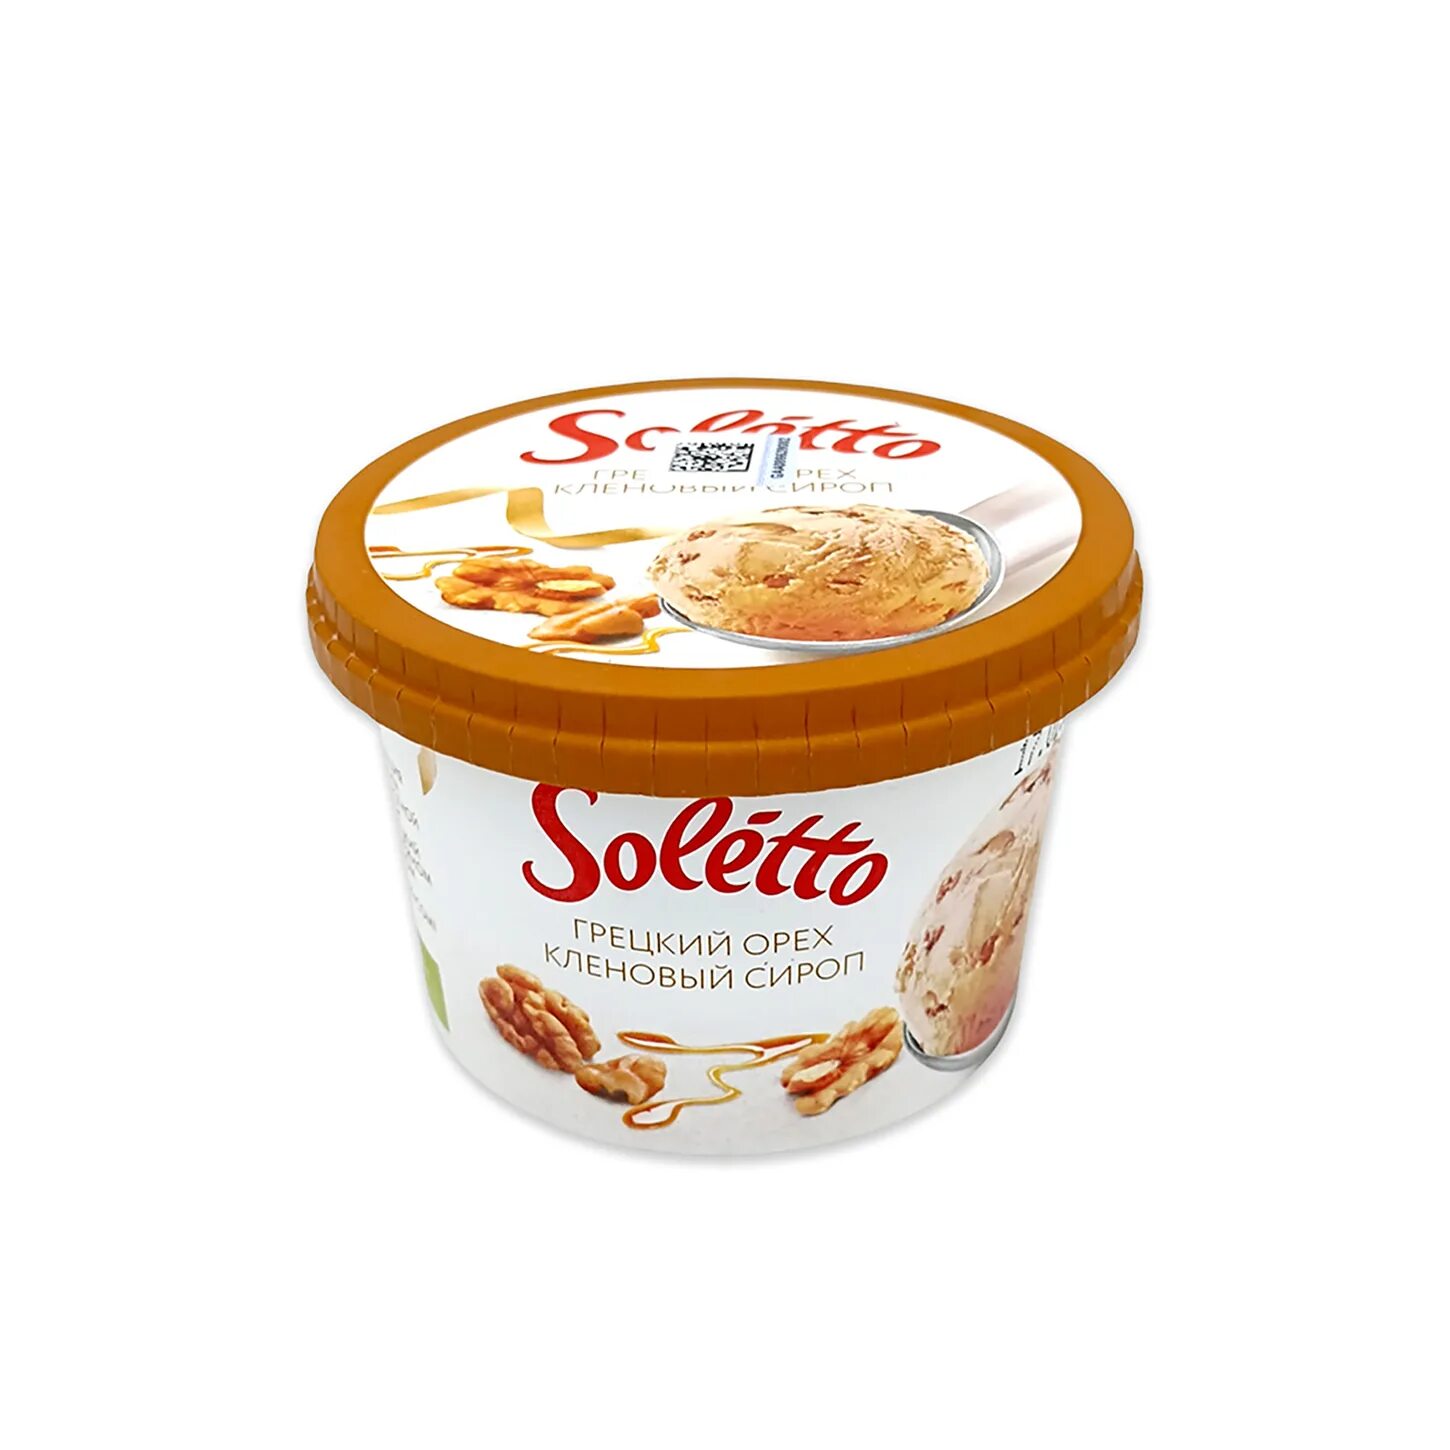 Мороженое с кленовым сиропом и грецким орехом. Мороженое Monterra грецкий орех и кленовый сироп 90мл. Мороженое Солетто миндаль. Soletto мороженое с миндалем. Soletto мороженое.